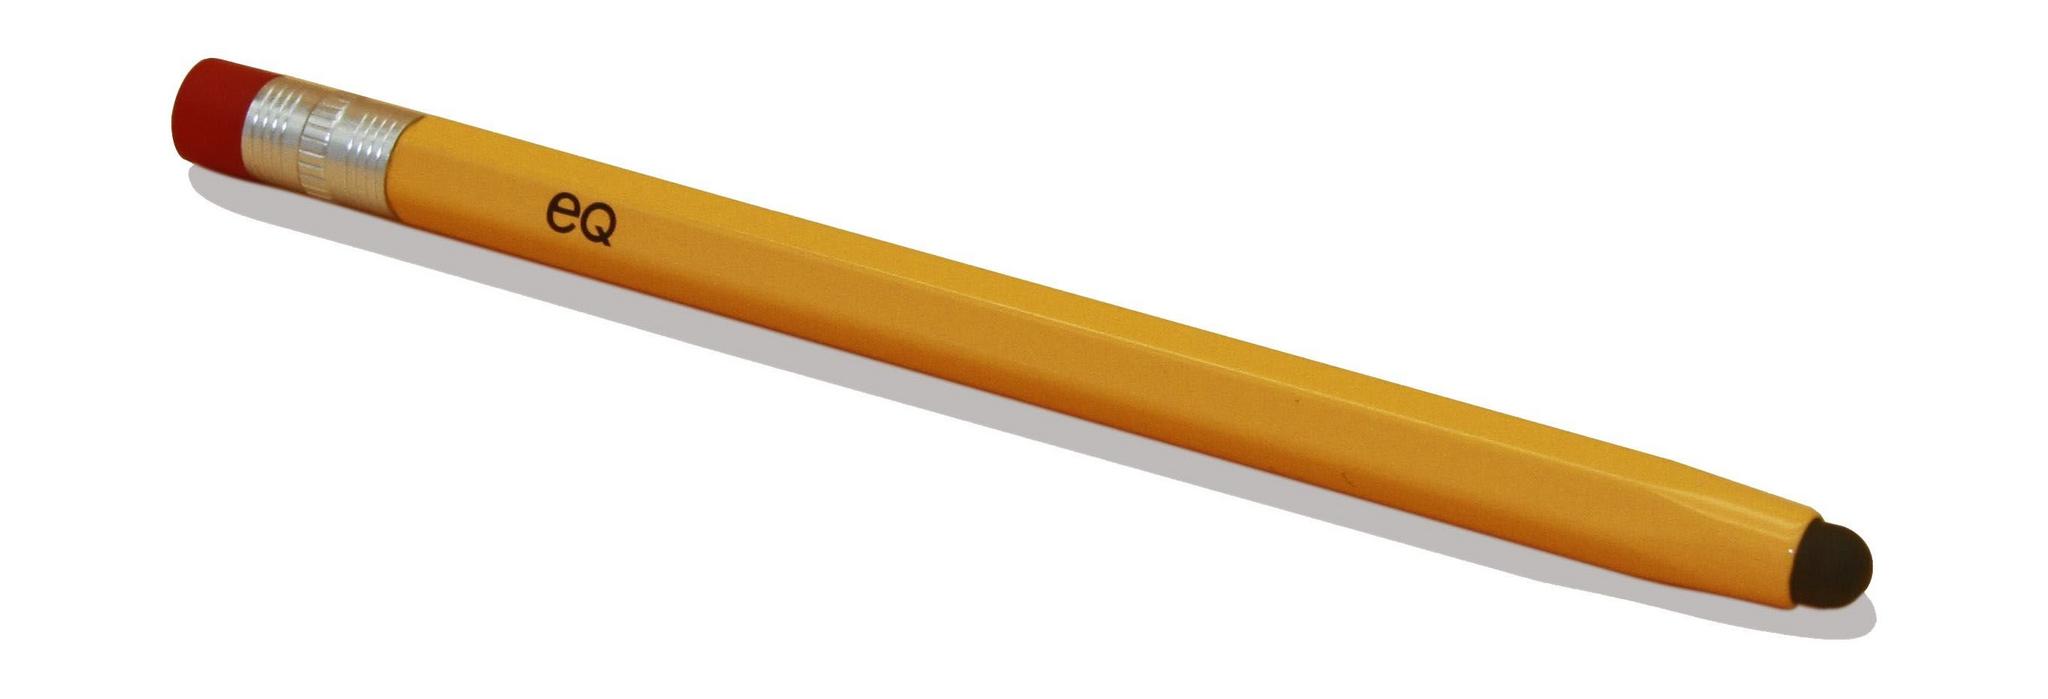 EQ Pencil Stylus - TPC-AL01